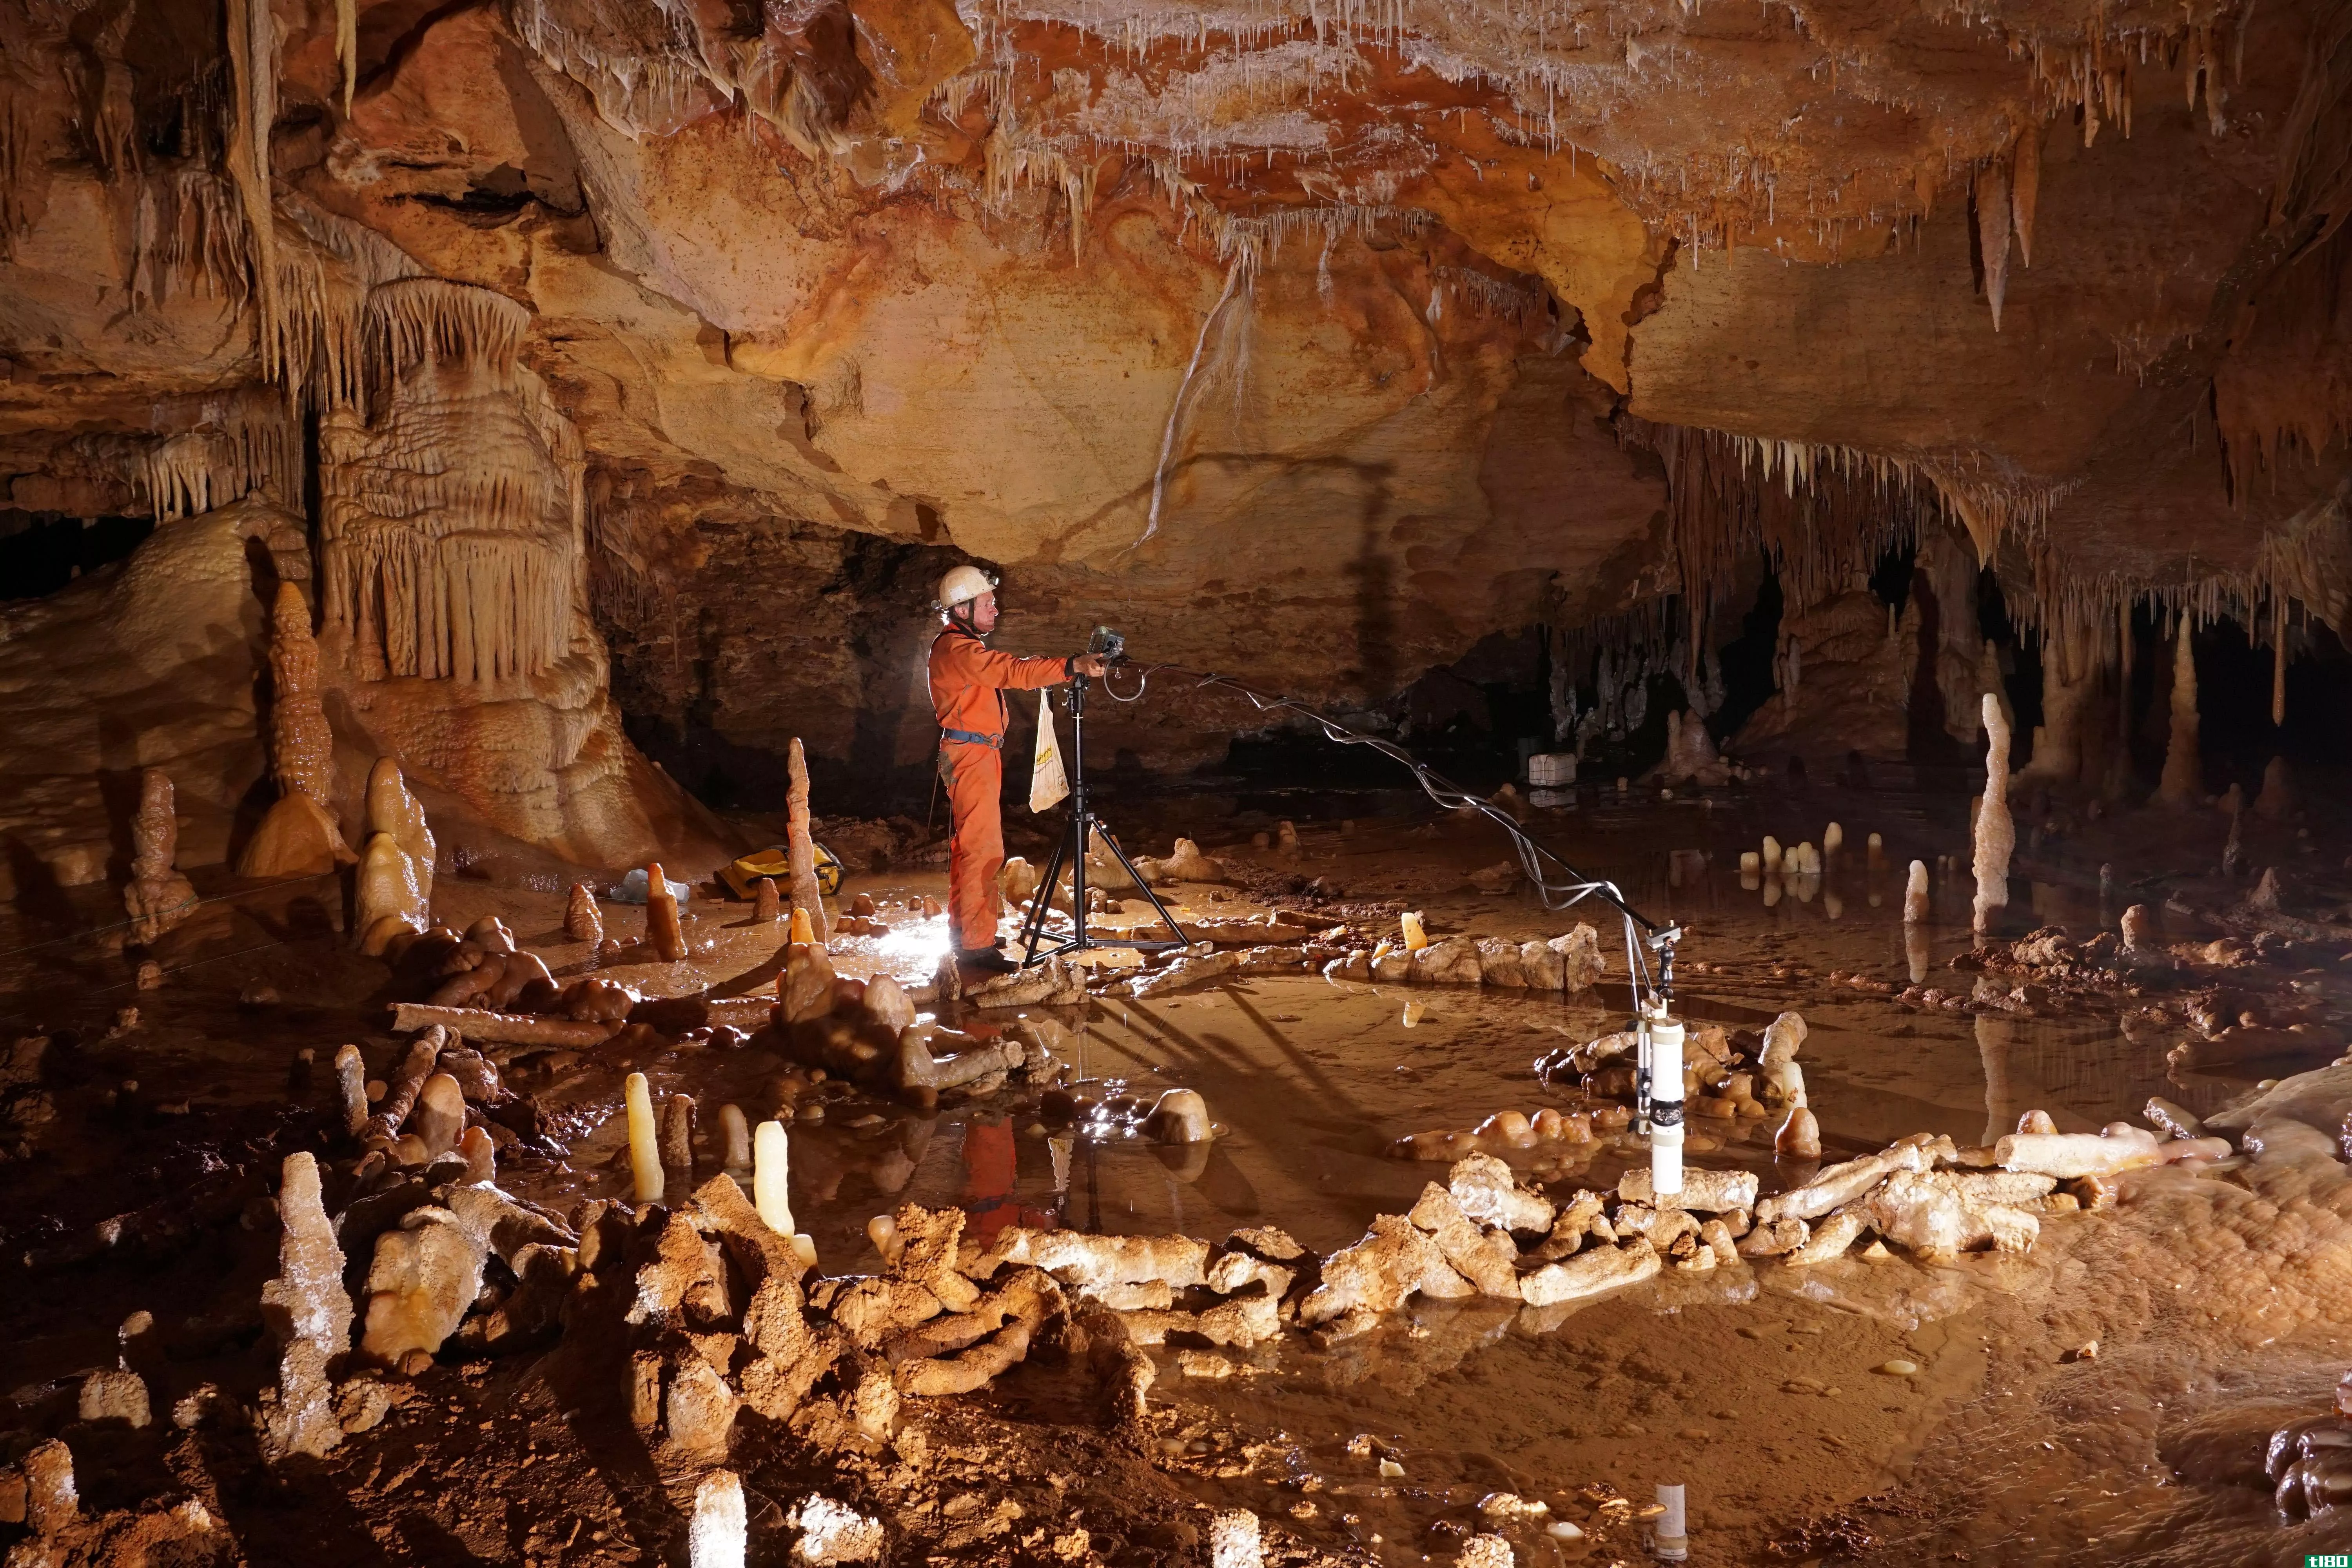 尼安德特人建造复杂洞穴的时间比我们想象的要长得多